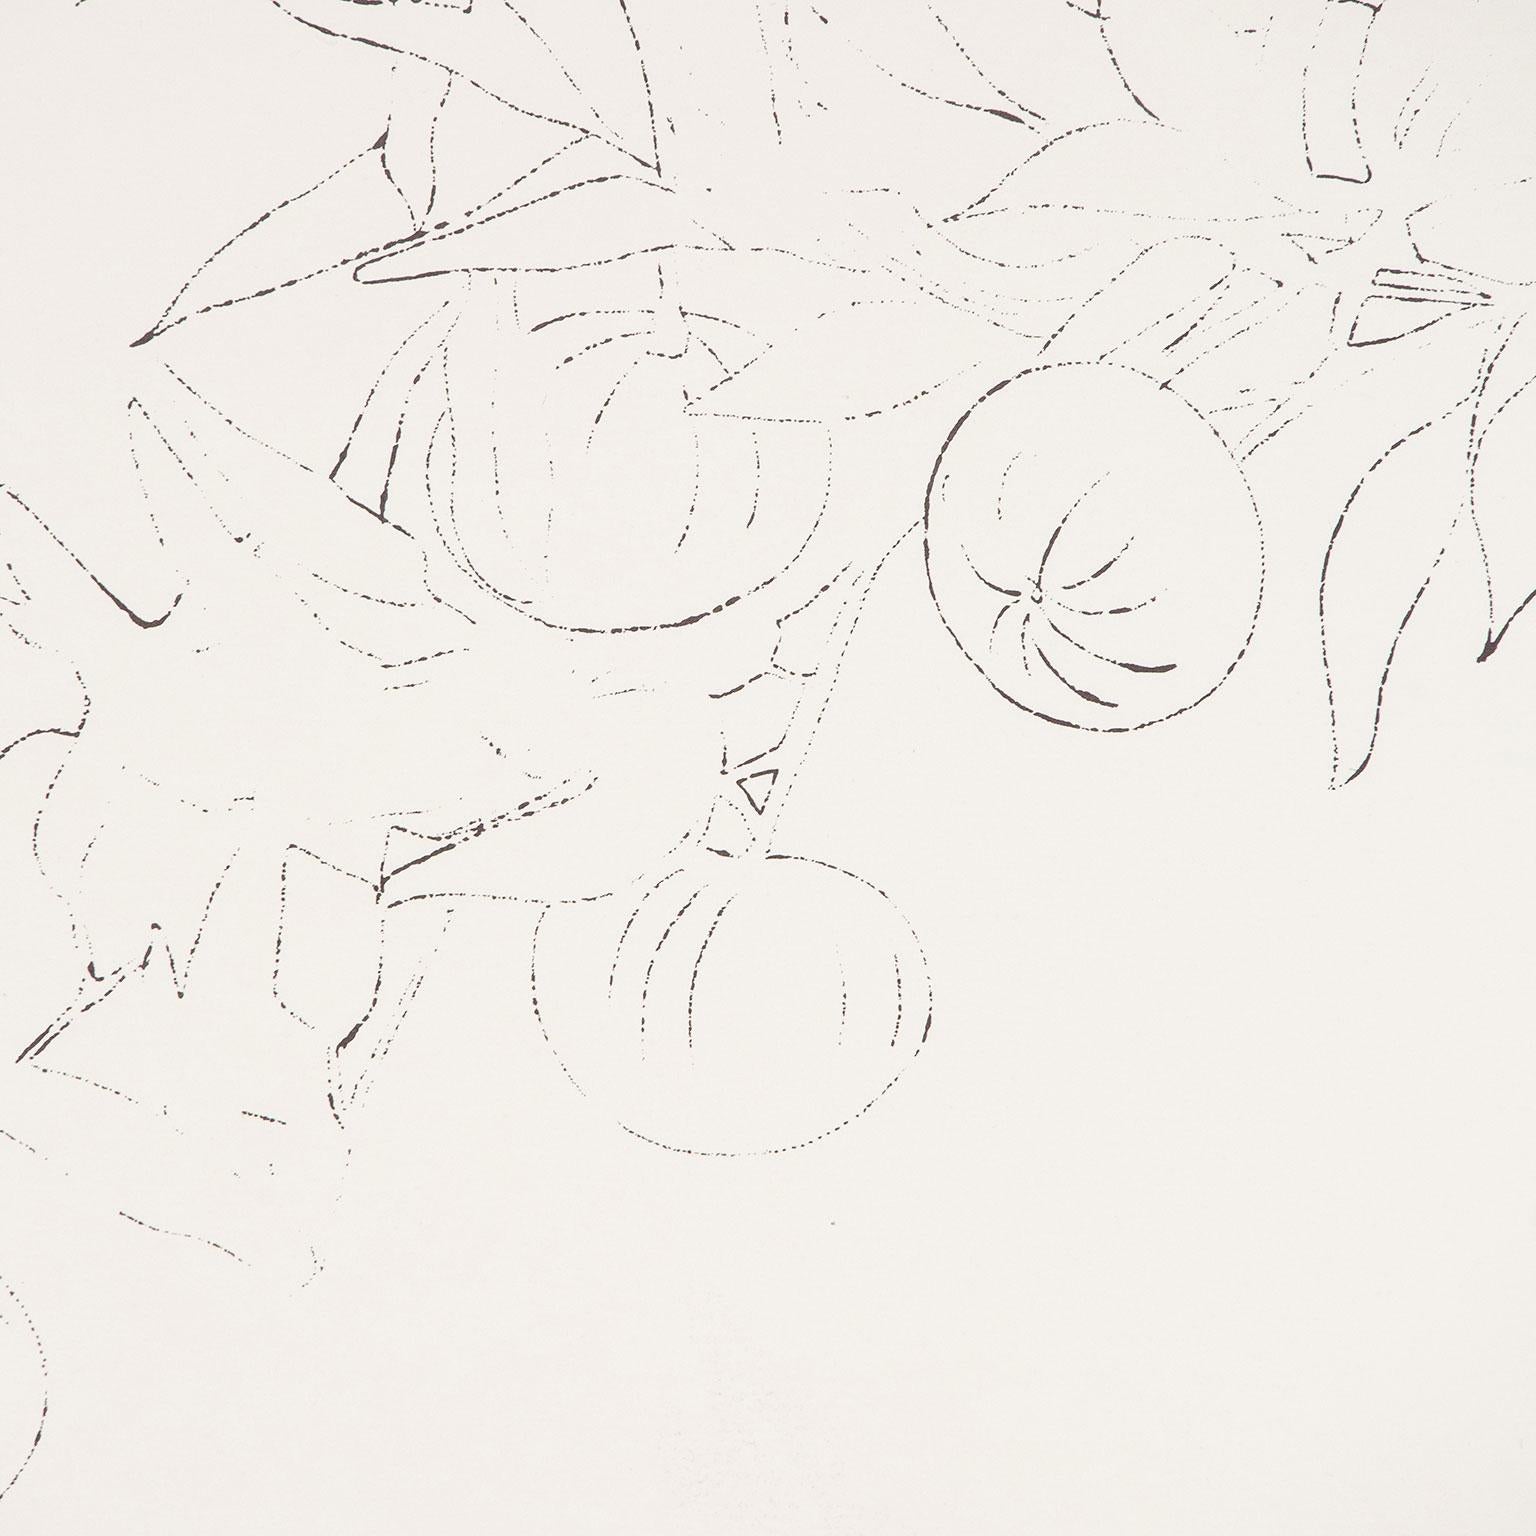 Oiseau sur une branche de fruits, lithographie offset colorée à la main à l'aquarelle 3